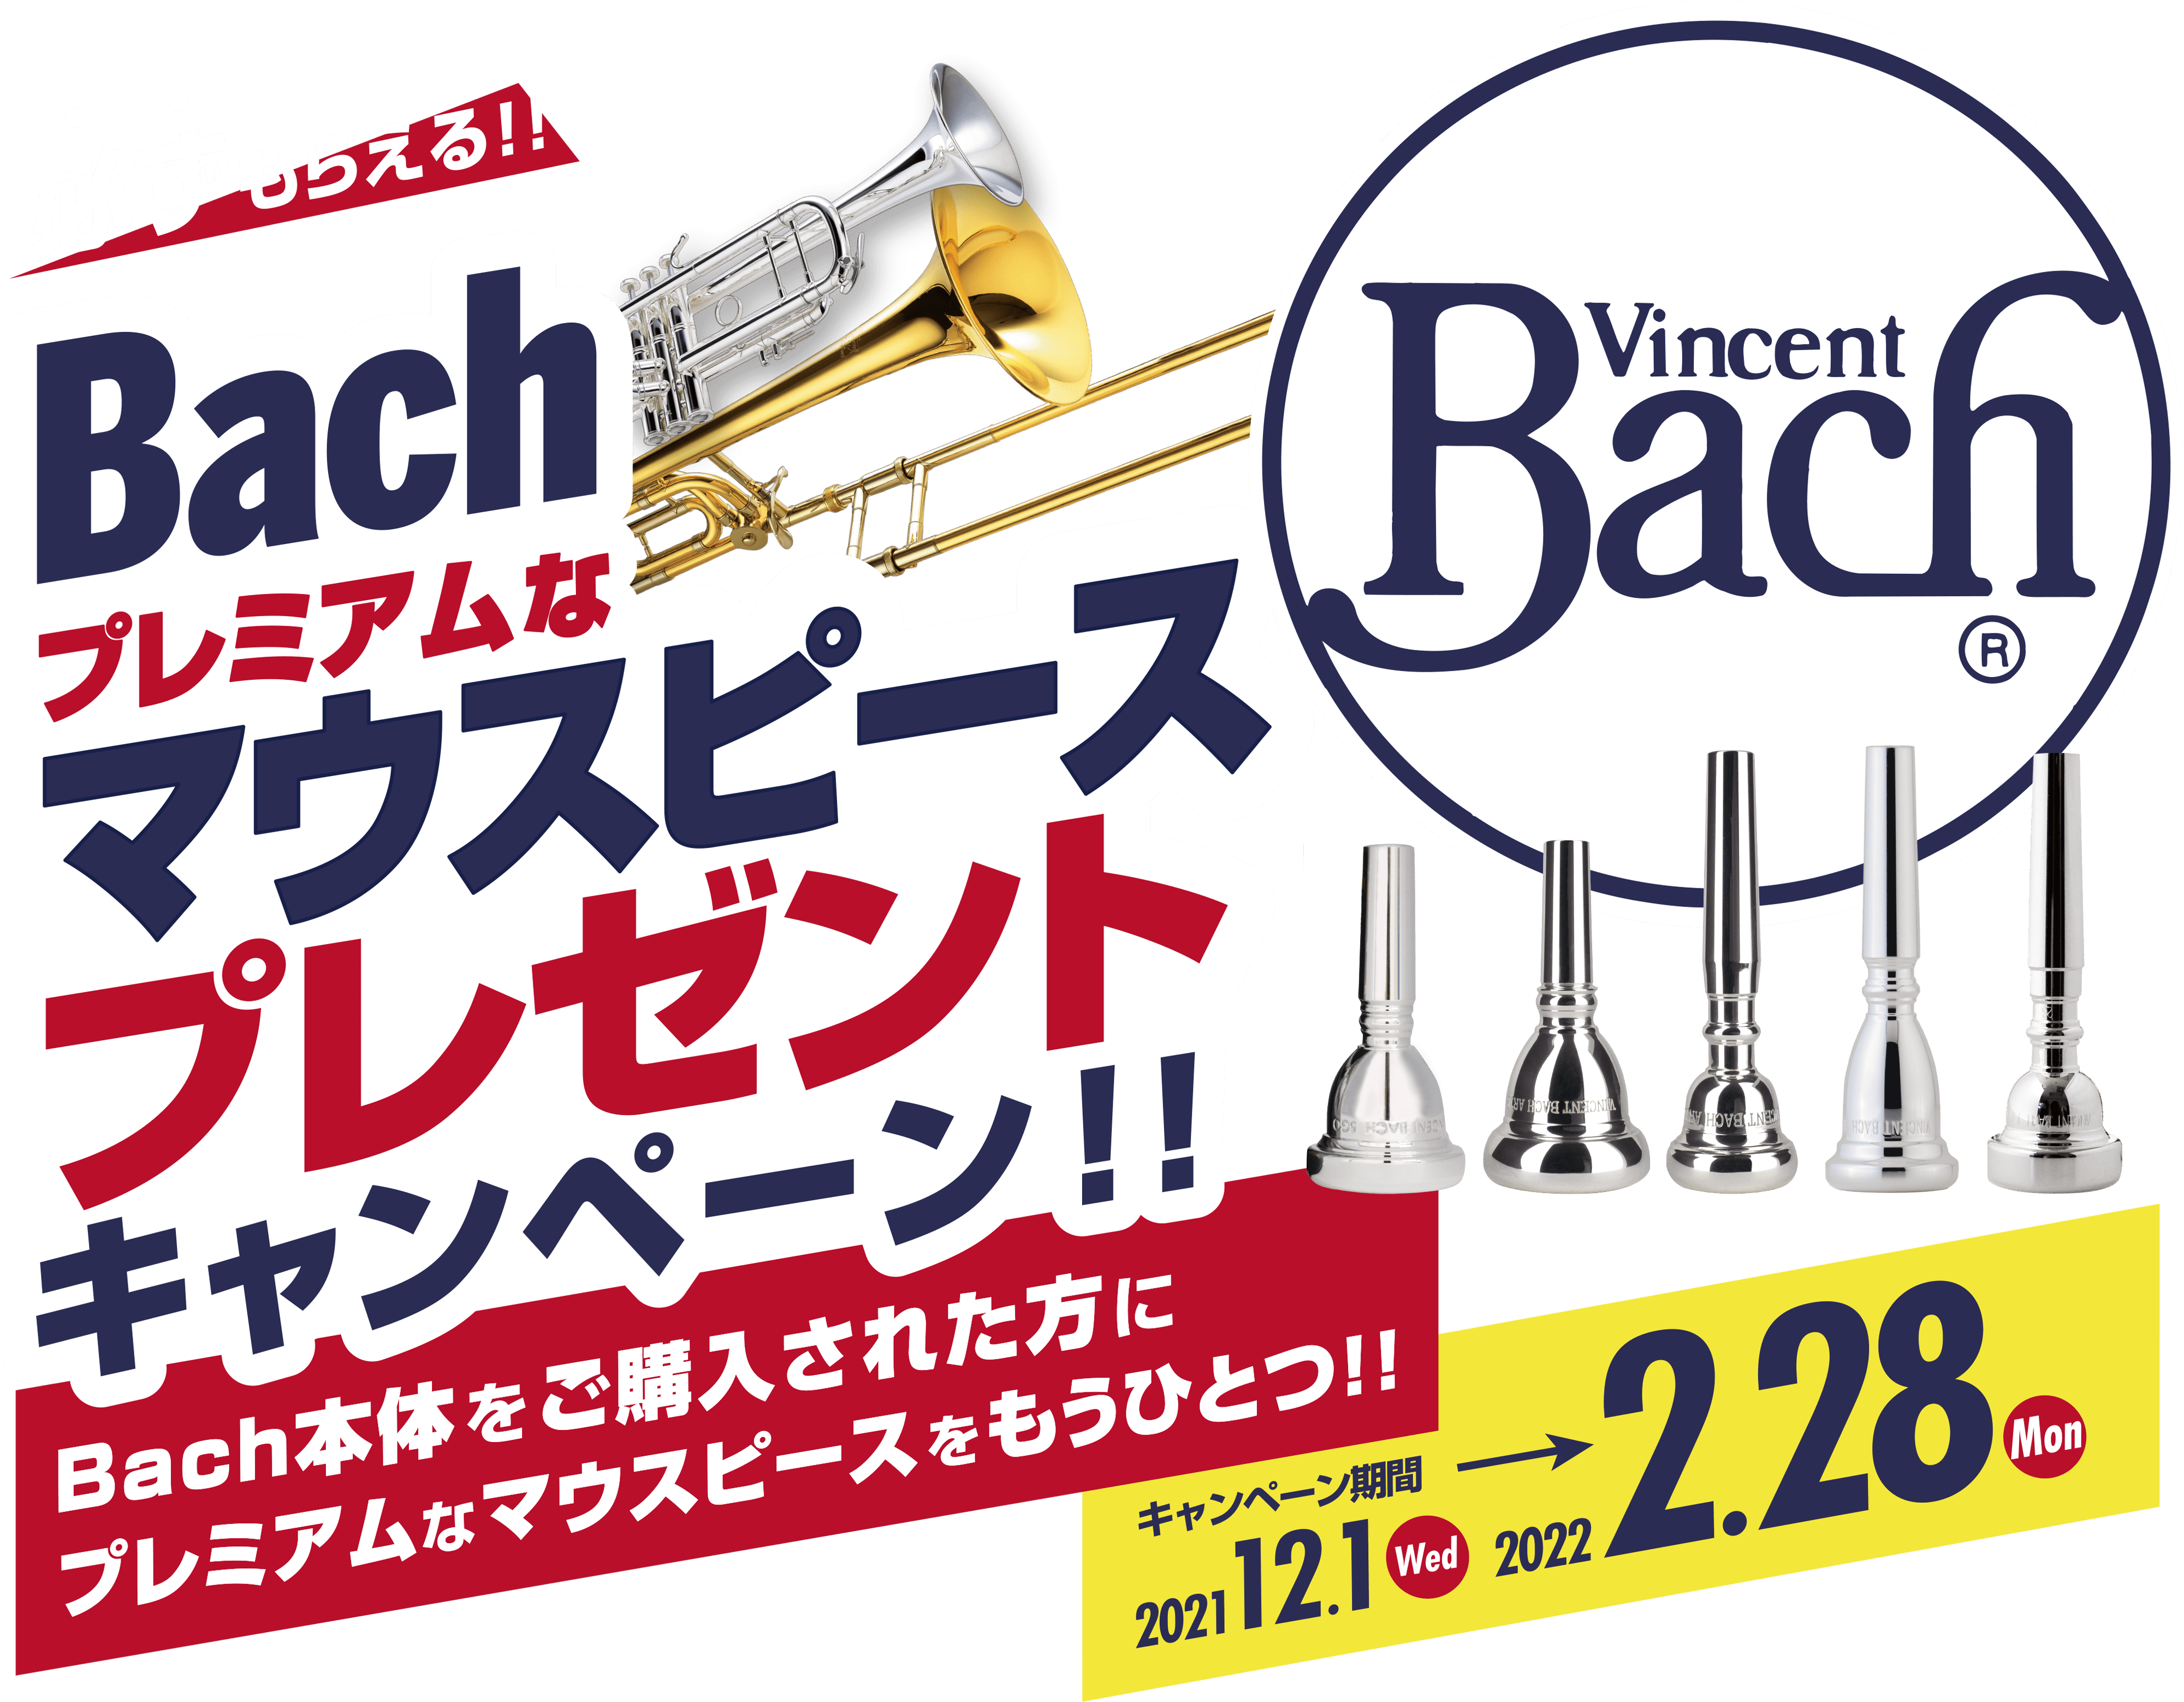 必ずもらえる！！Bachプレミアムなマウスピースプレゼントキャンペーン！！Bach本体をご購入された方にプレミアムなマウスピースをもうひとつ！！キャンペーン期間　2021.12.1（Wed）→2022.2.28（Mon）